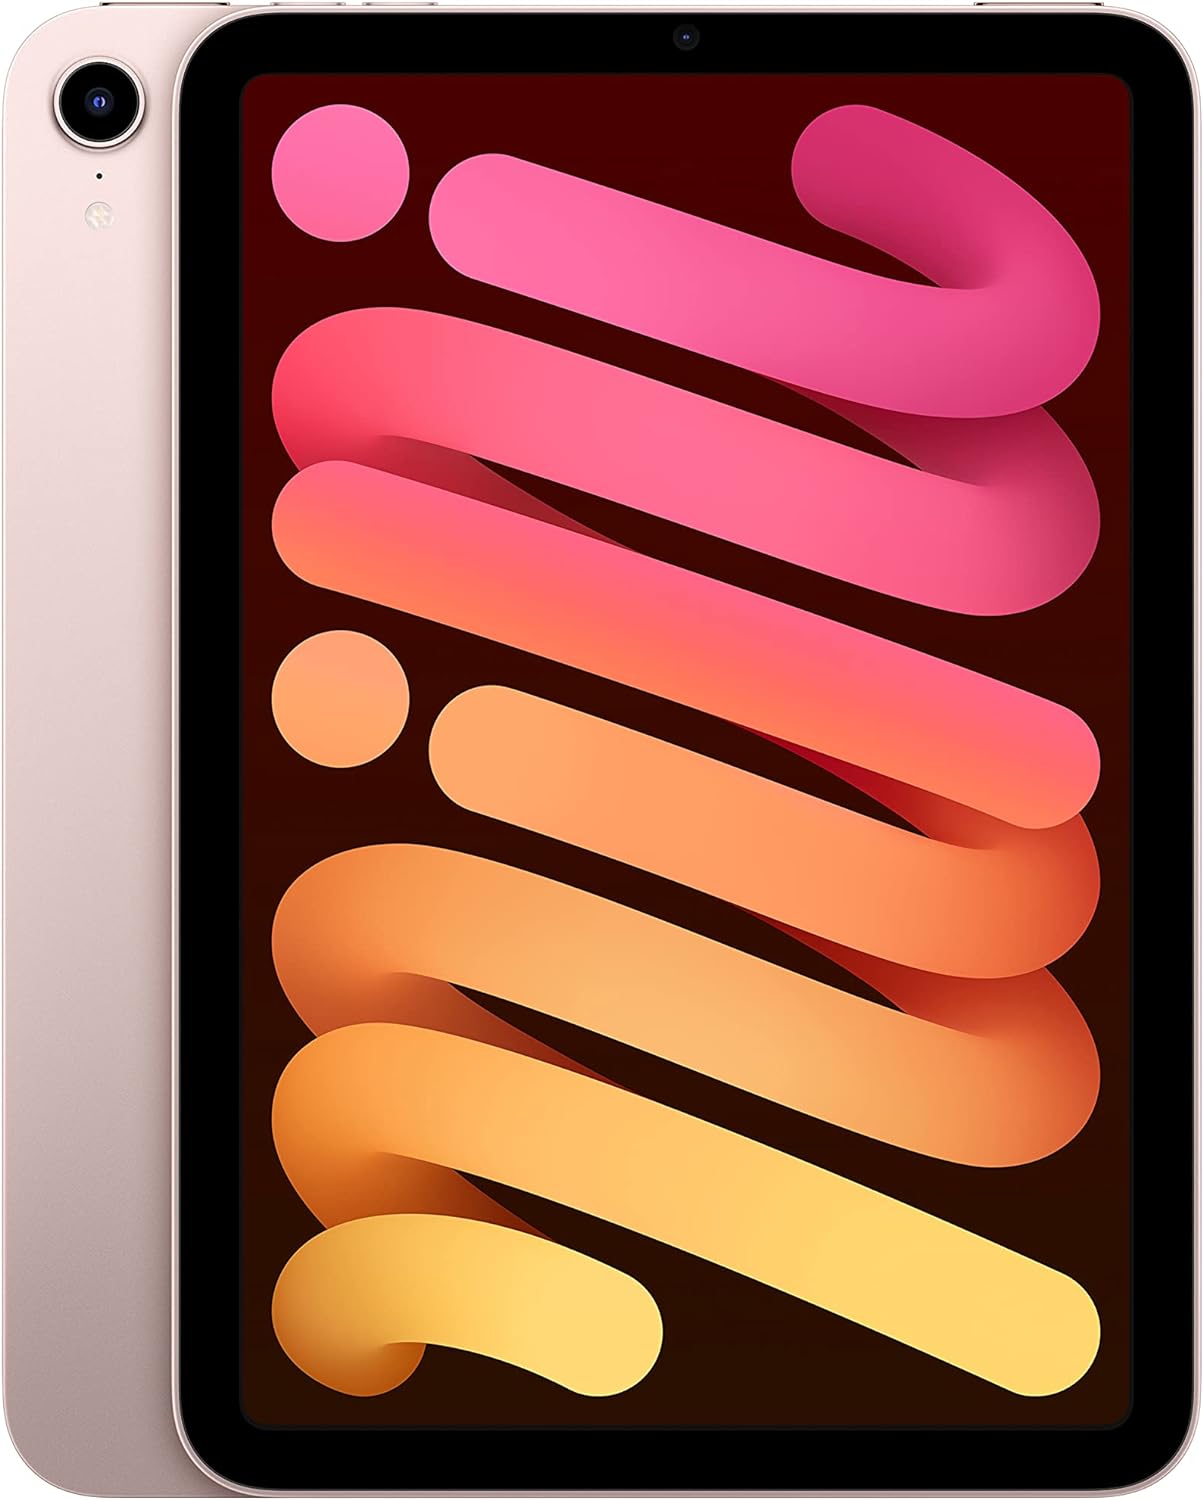 iPad mini de sexta generación, año 2021, en color rosa